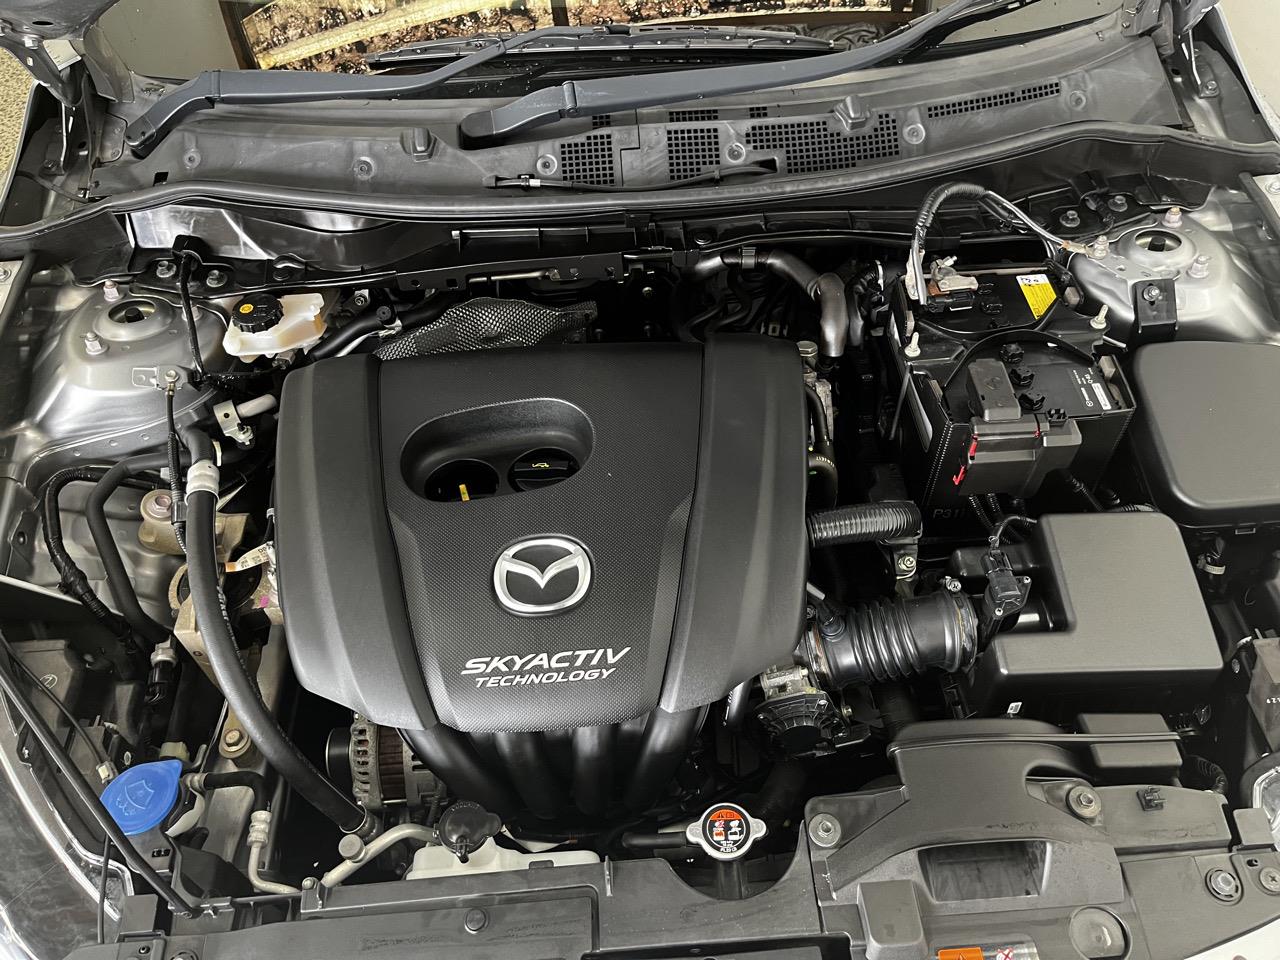 2015 Mazda Demio